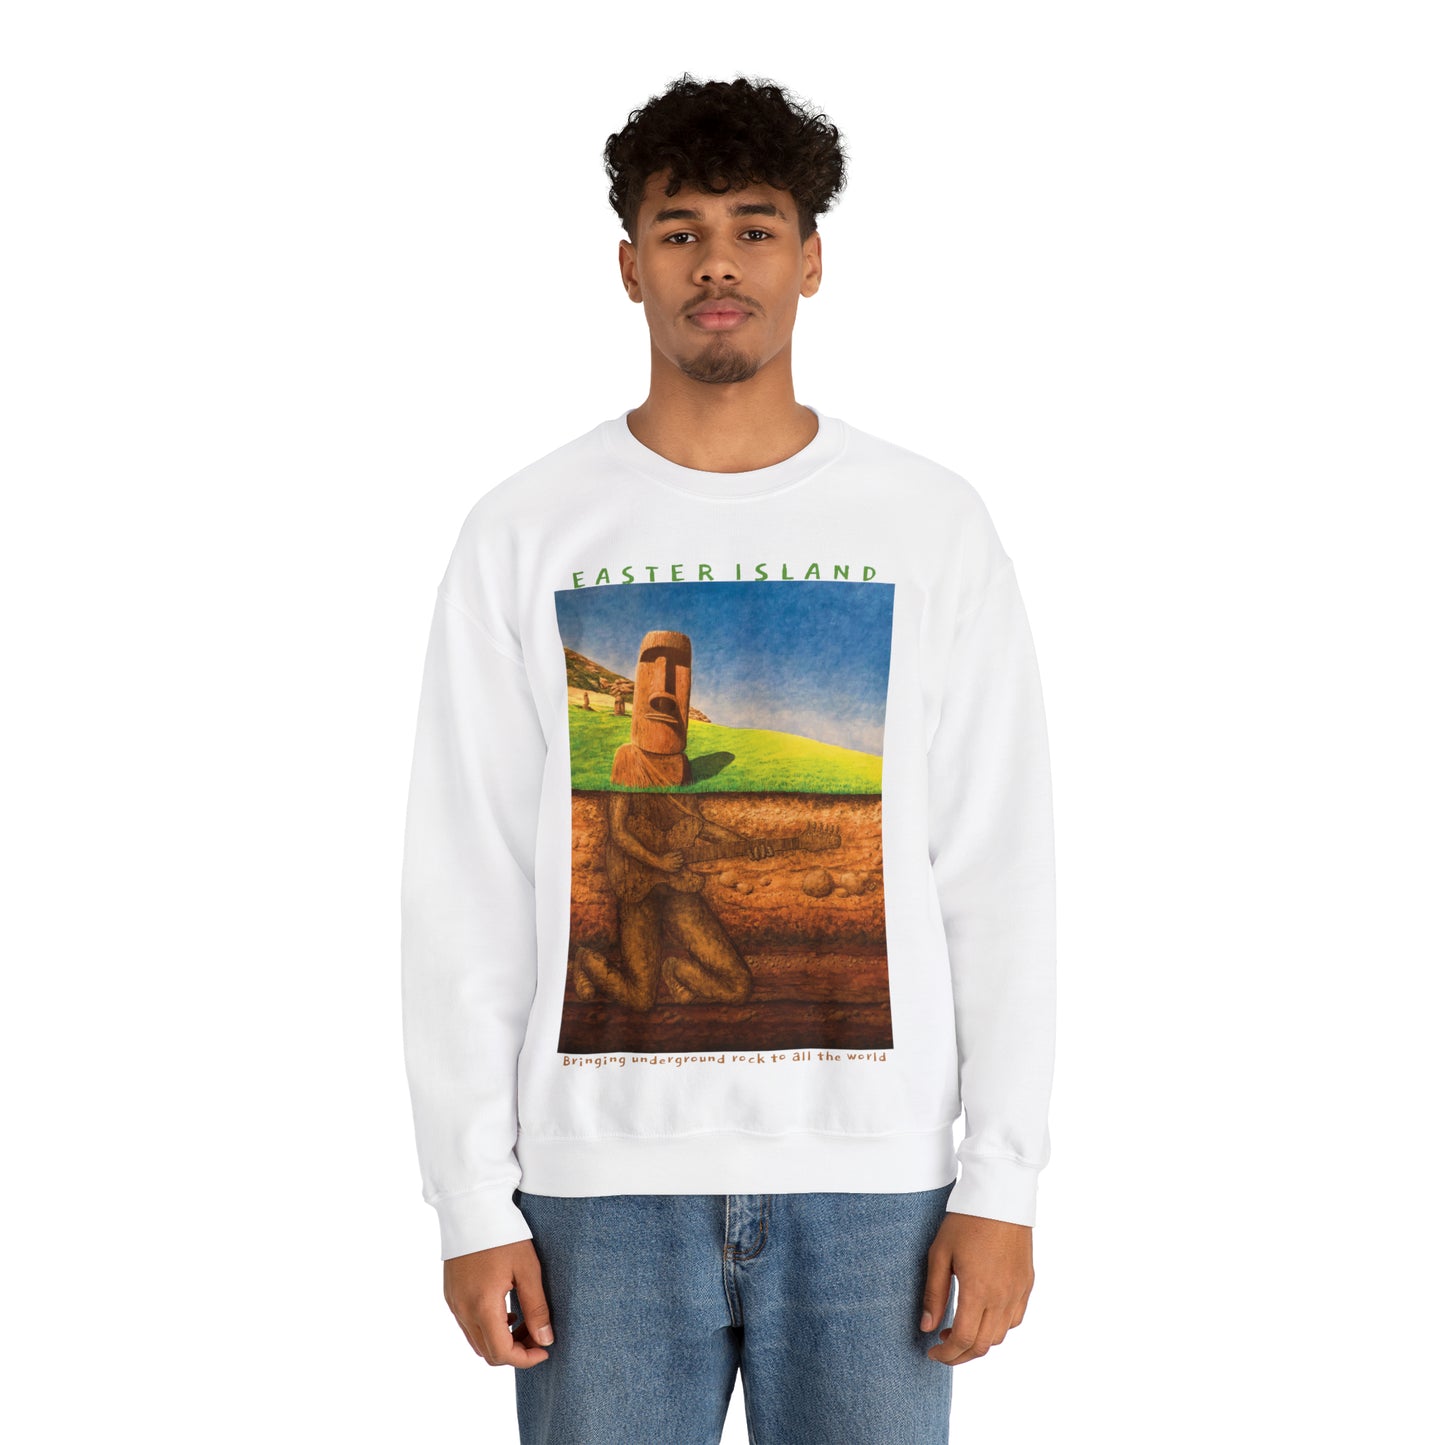 Underground Rock with text - Sweatshirt